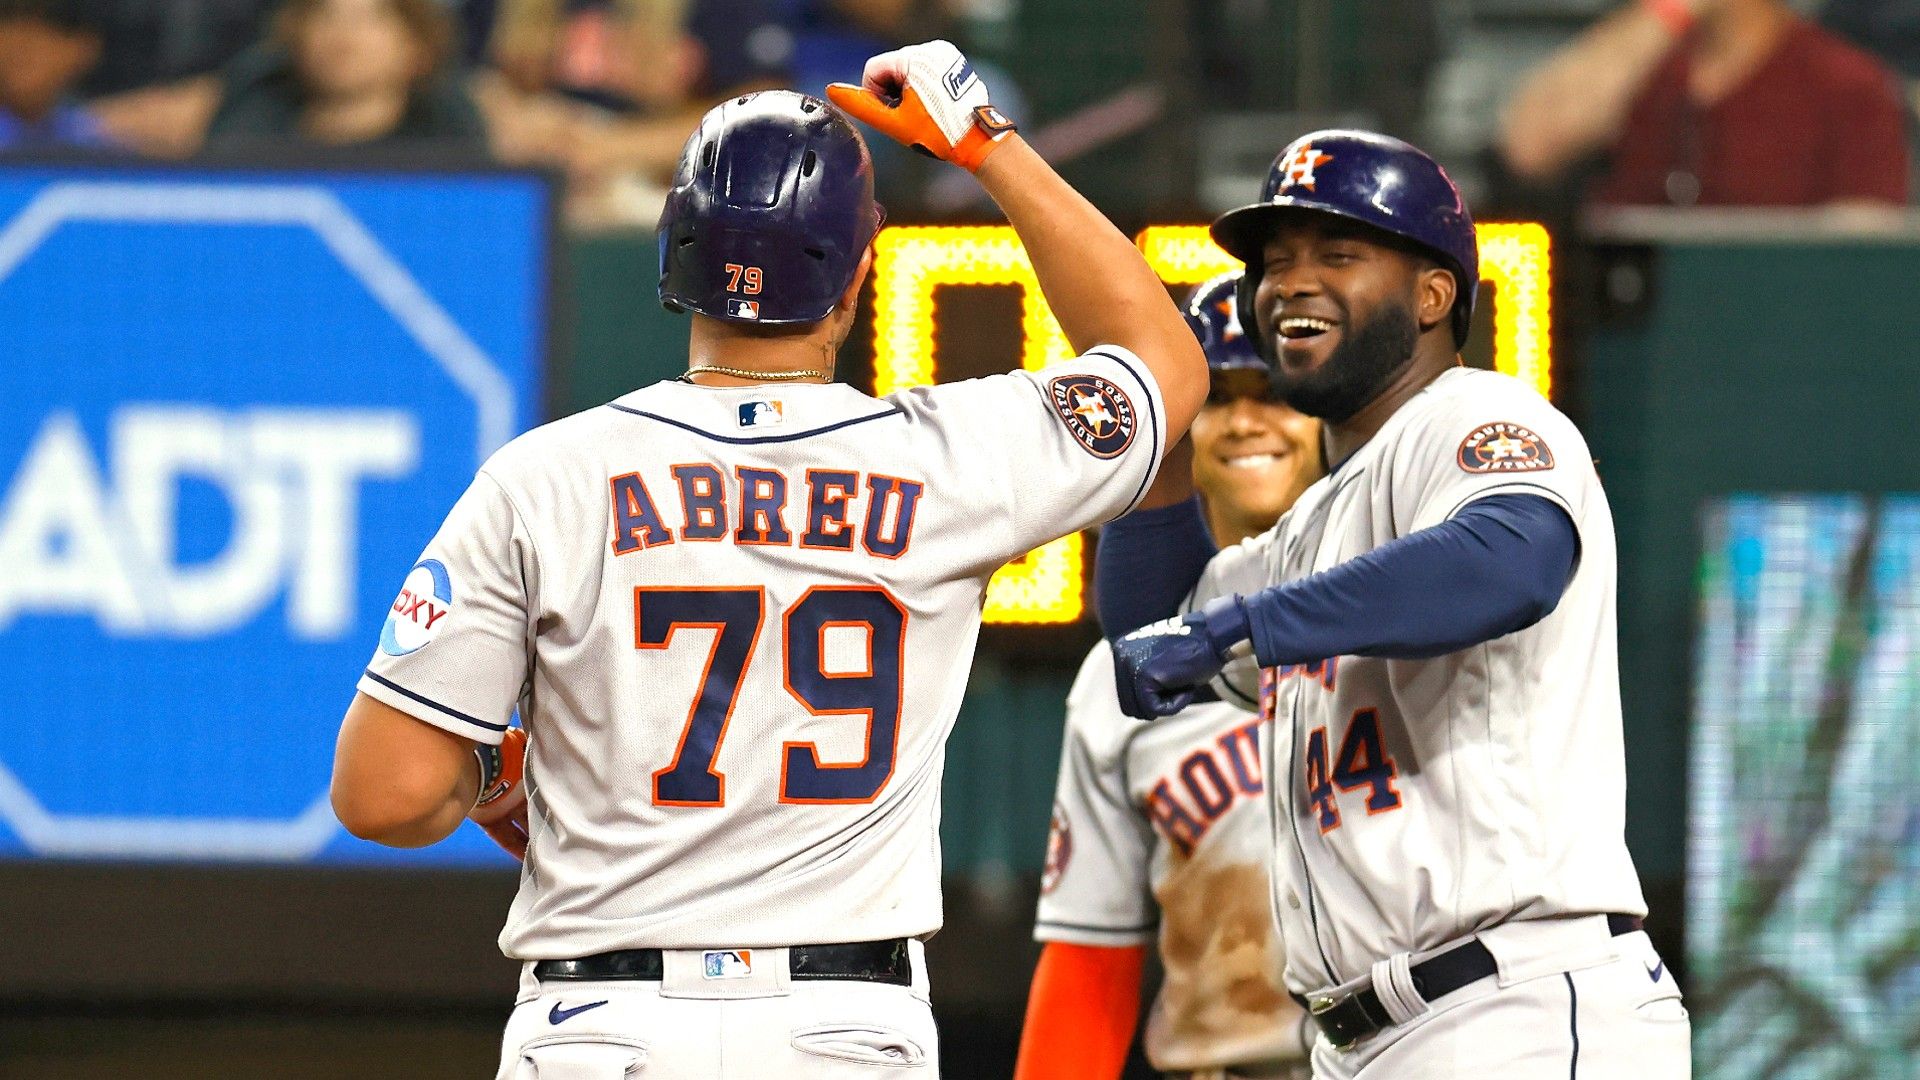 Abreu's 7 RBIs fuel Astros' dominant win over Rangers as they crush Scherzer